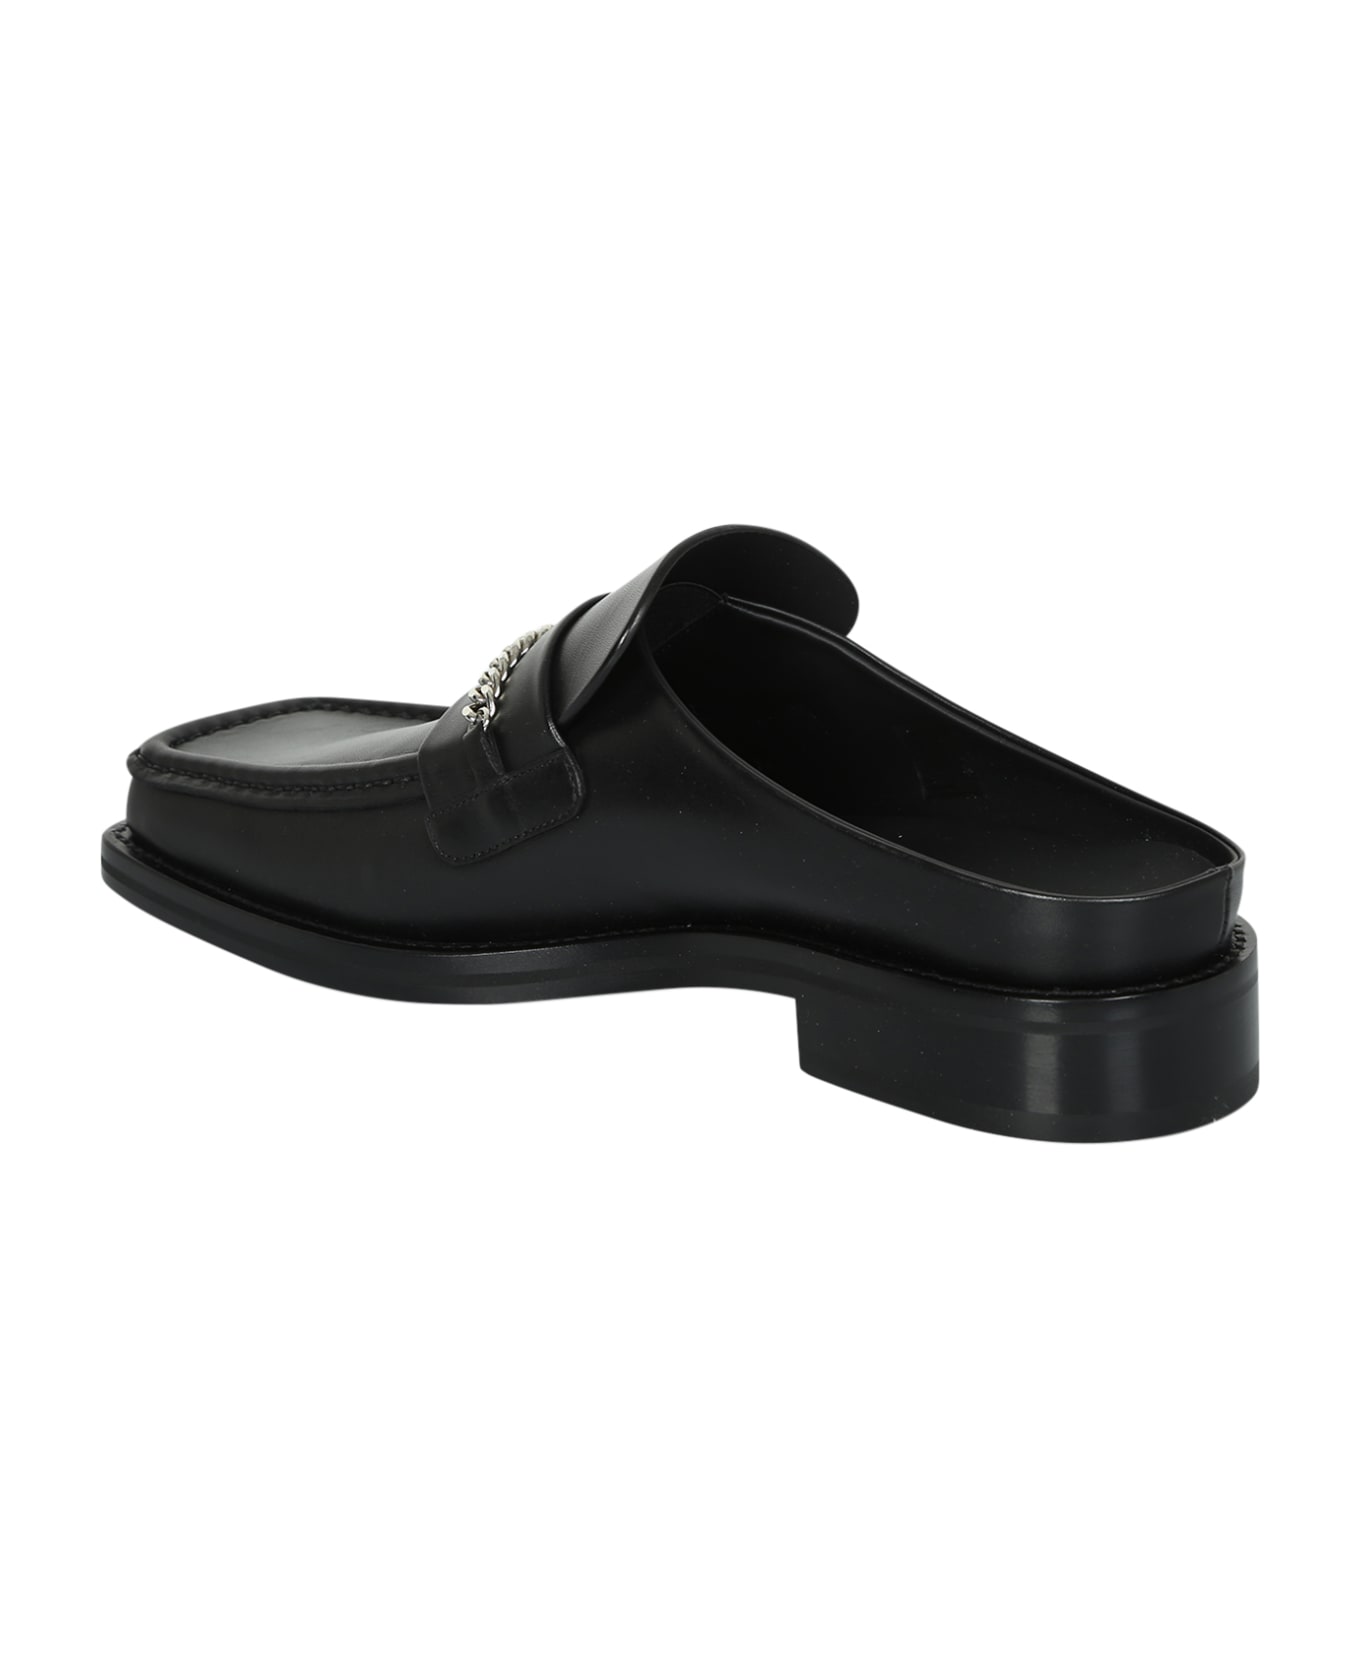 Martine Rose Chain-embellished Slip-on Loafers - Black